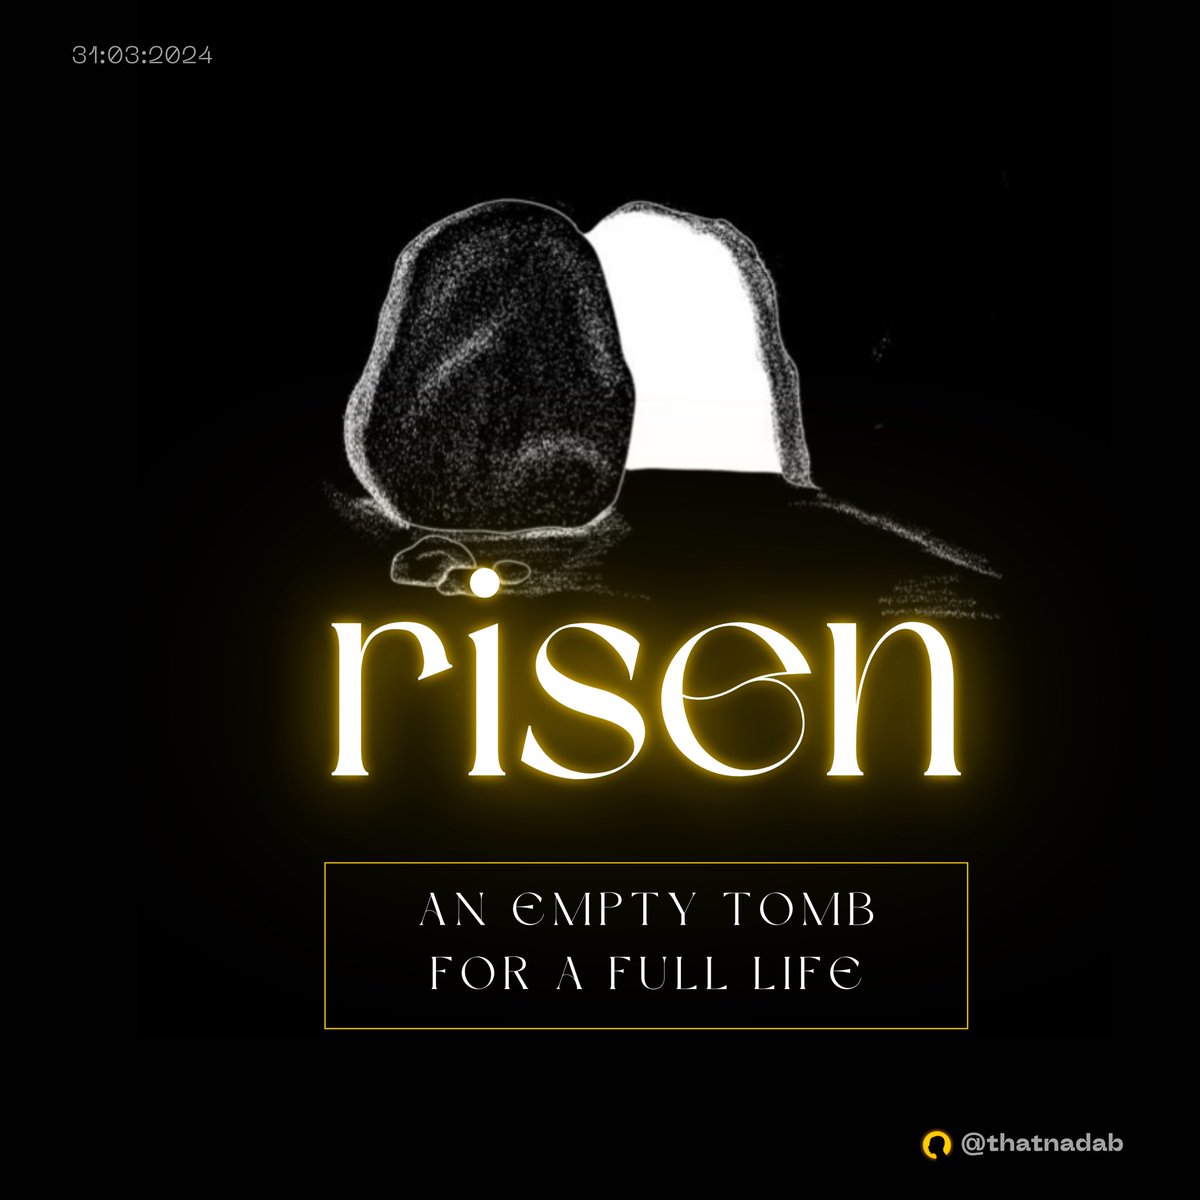 Happy Resurrection Sunday
#risen
#joyfulsoul